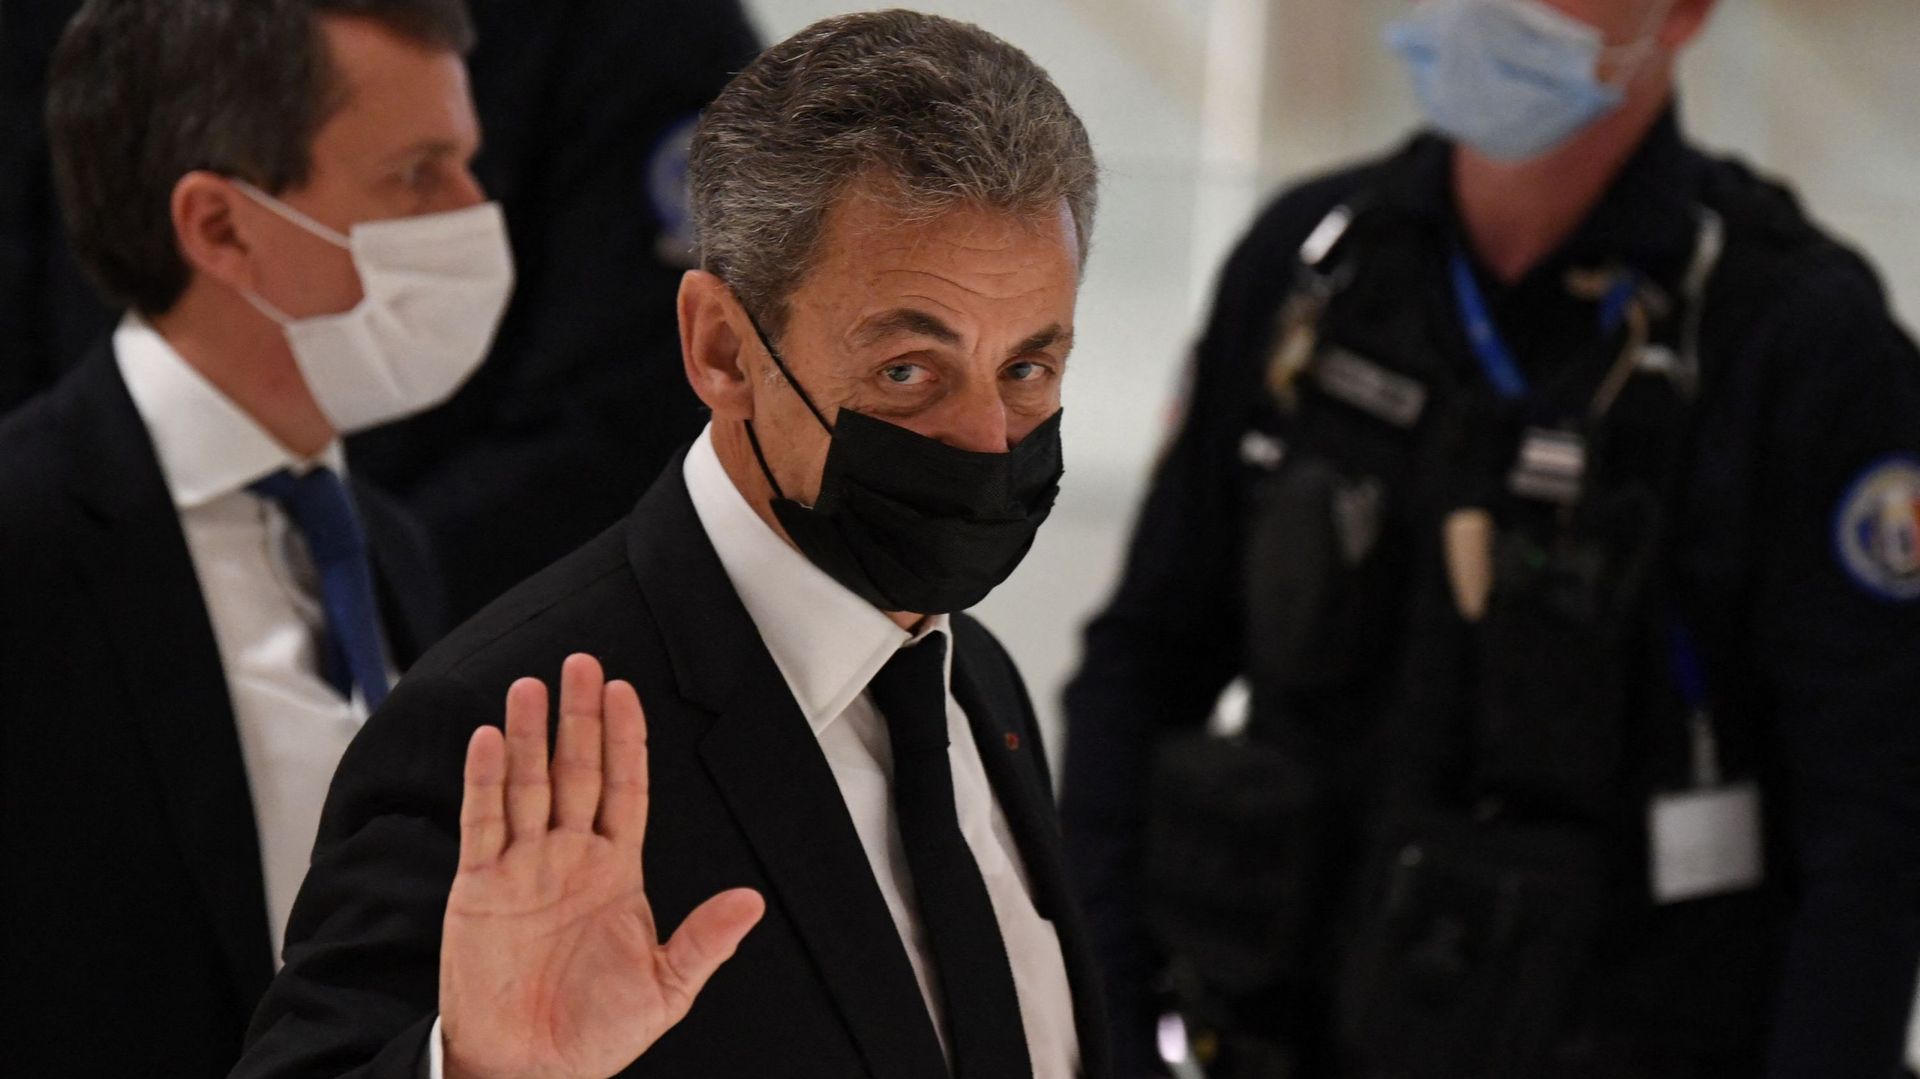 Affaire des "écoutes" : le procès en appel de Nicolas Sarkozy fixé à la fin de l'année